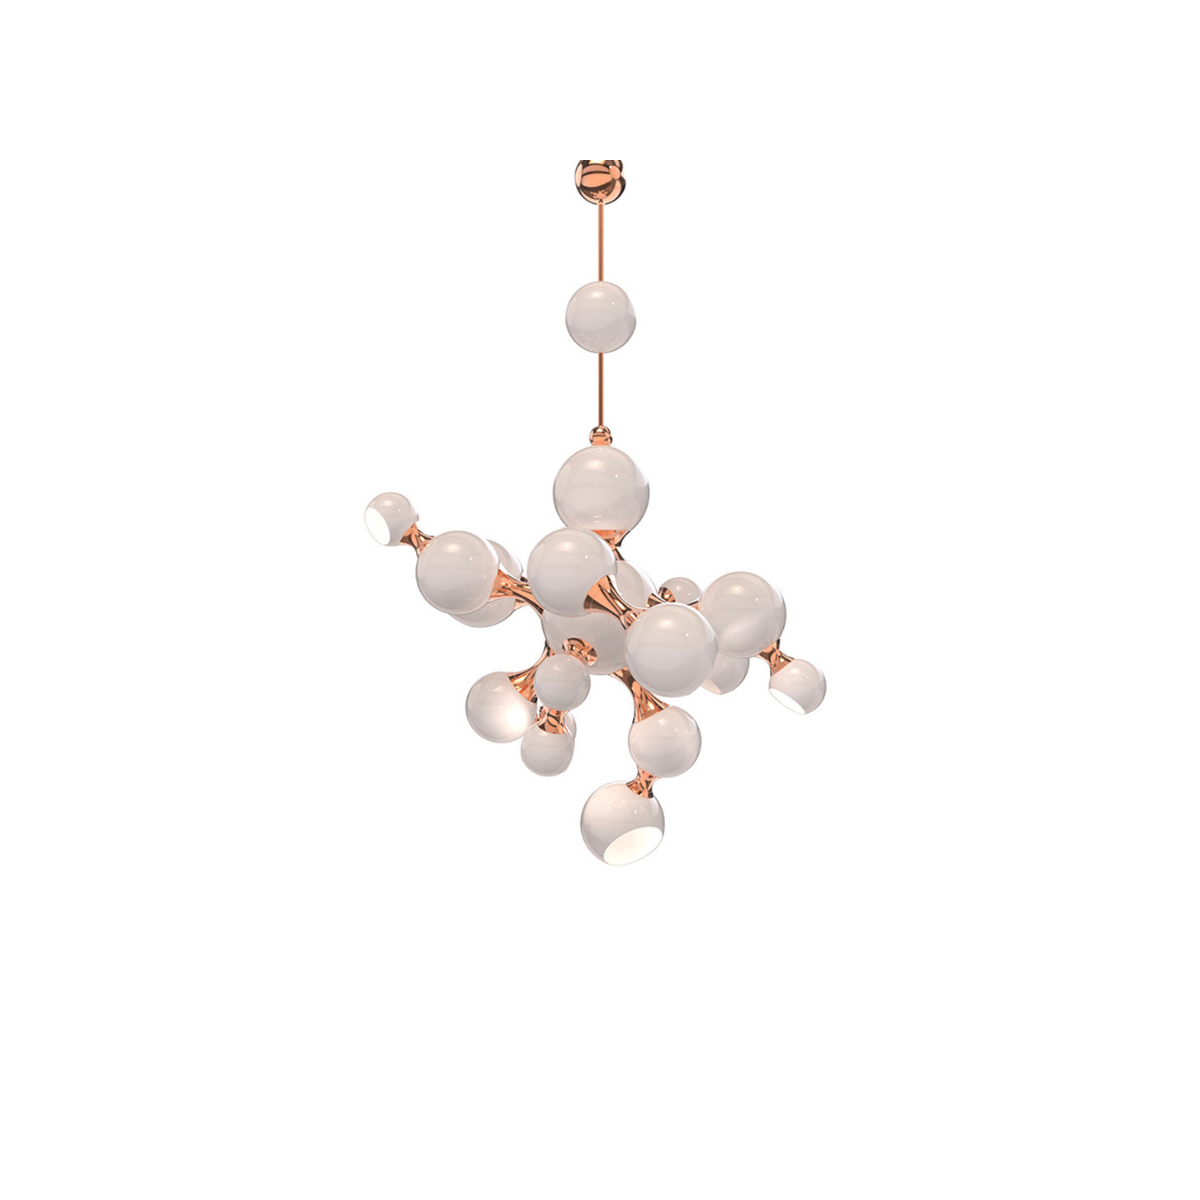 Atomic Pendant Lamp by Delightfull Covet Lighting